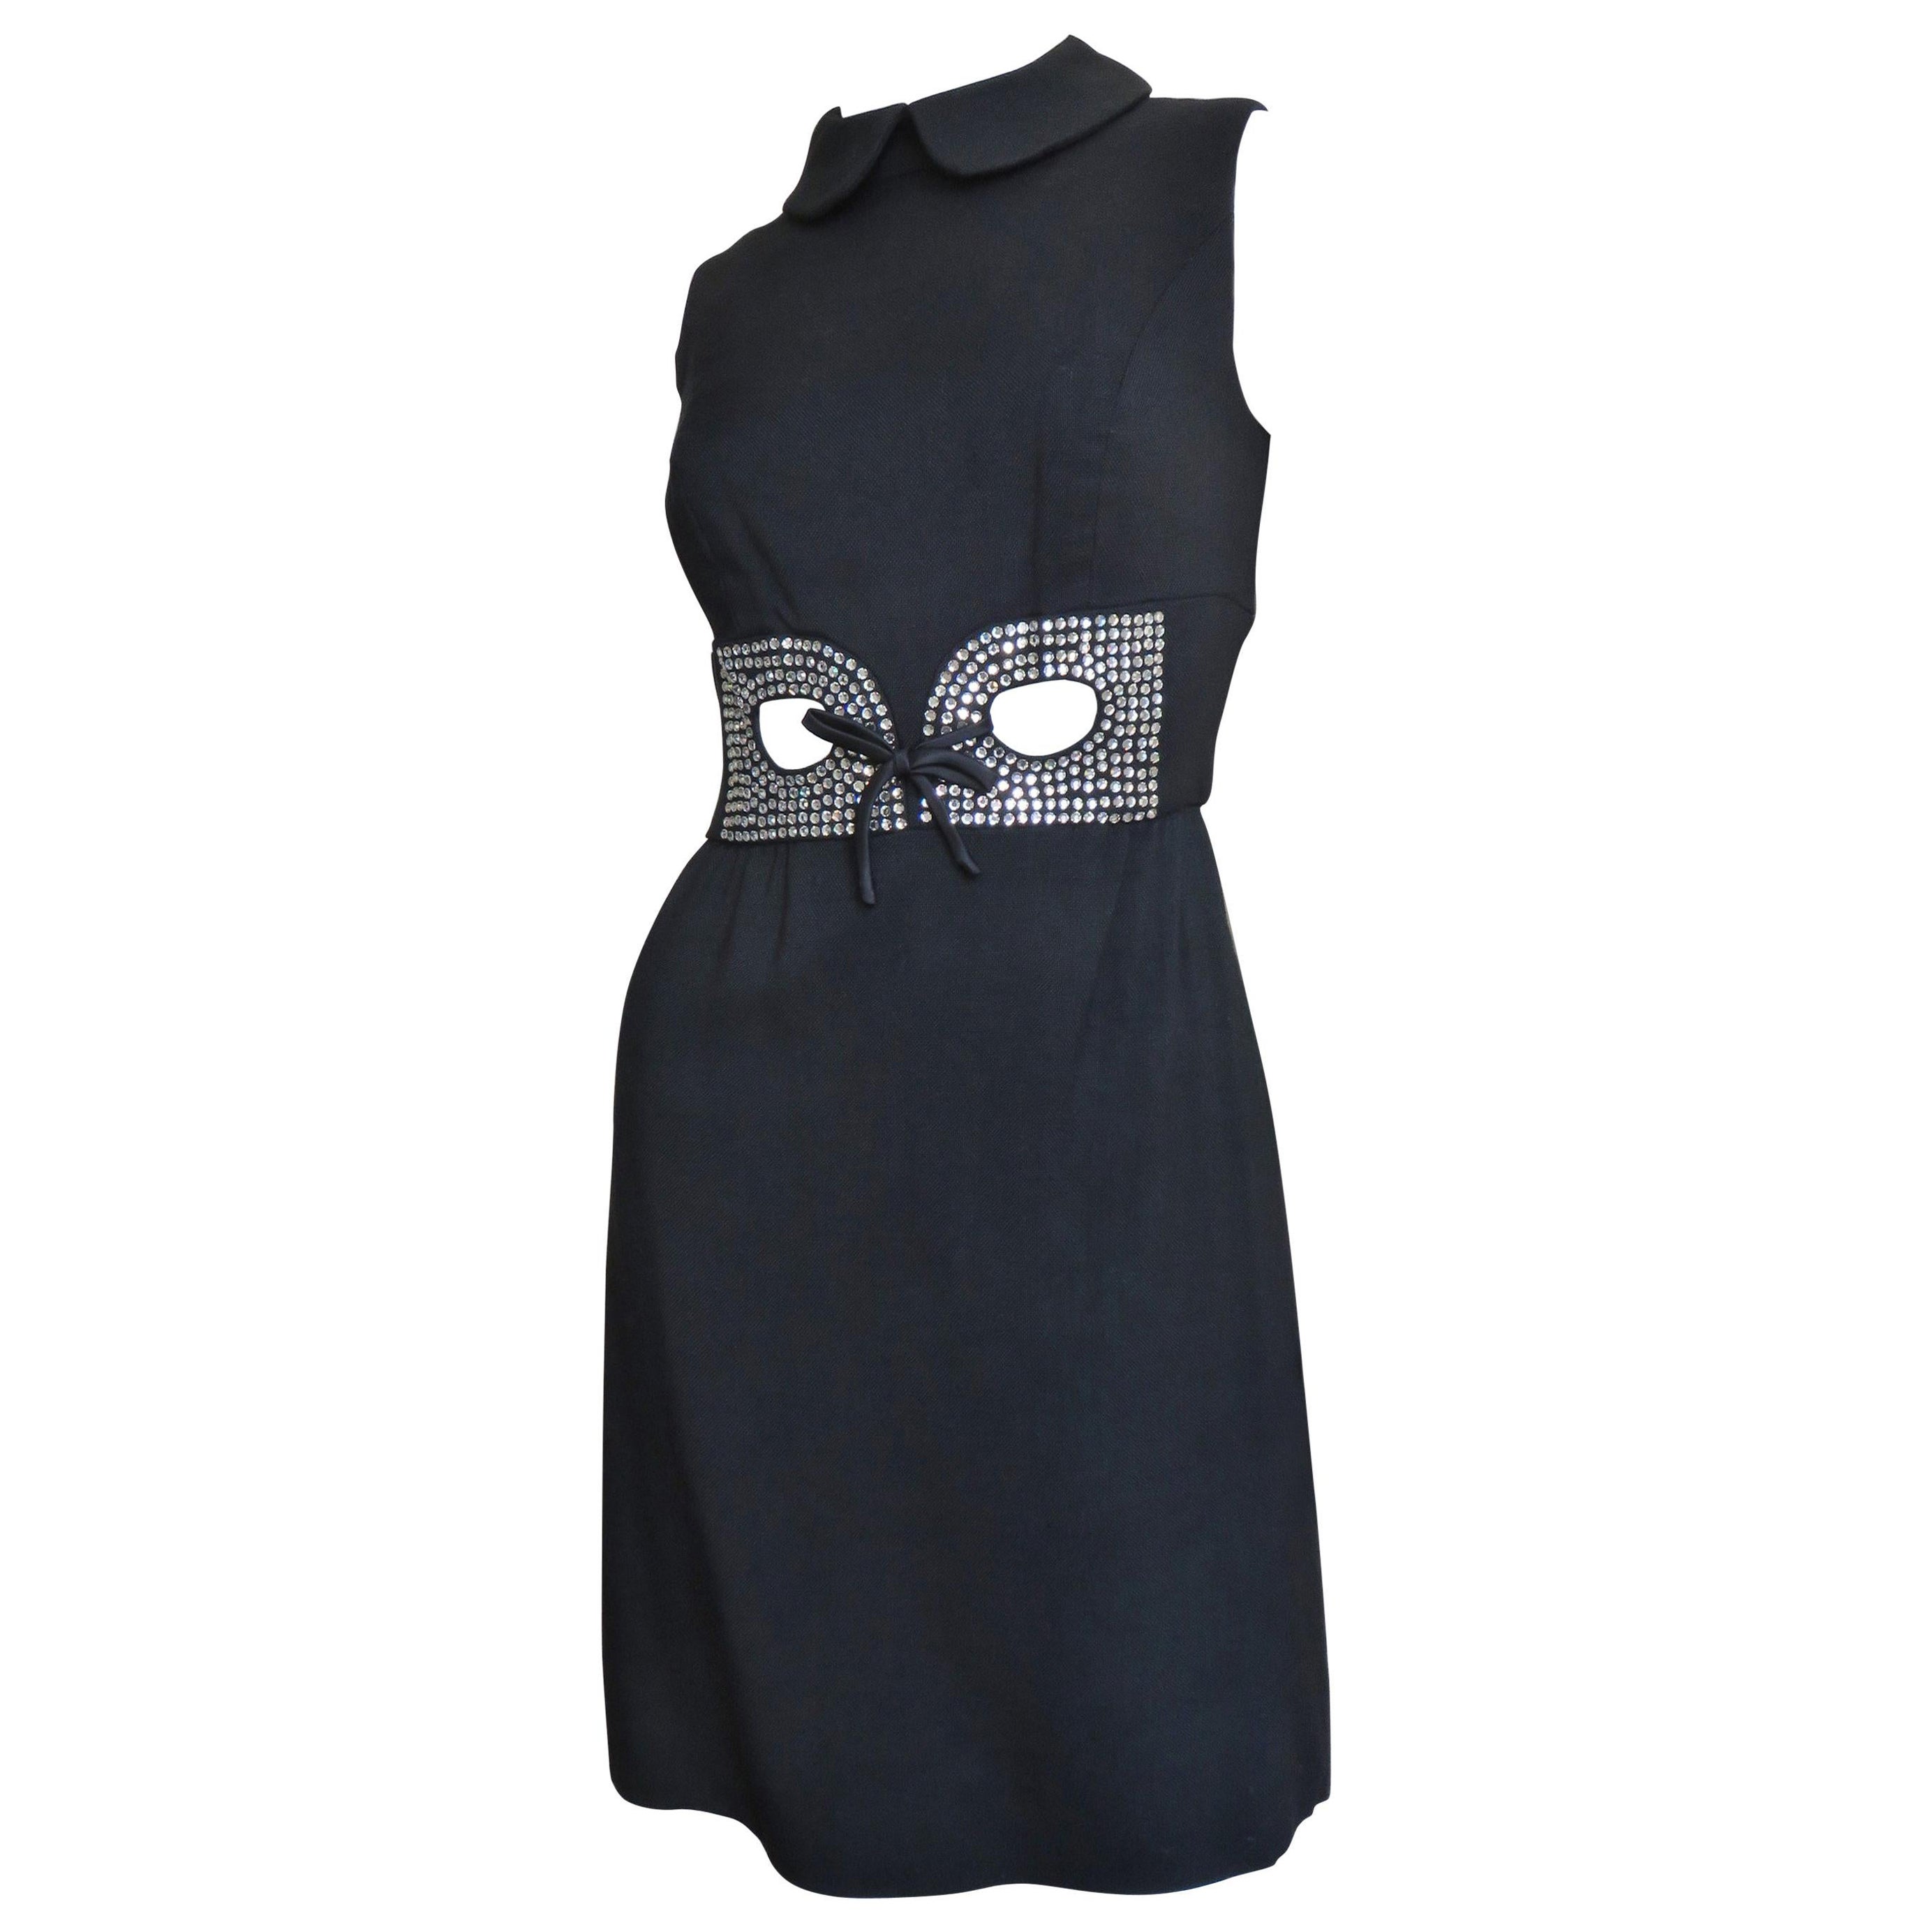 I. Magnin Linen 1960s Dress with Cut out Waist